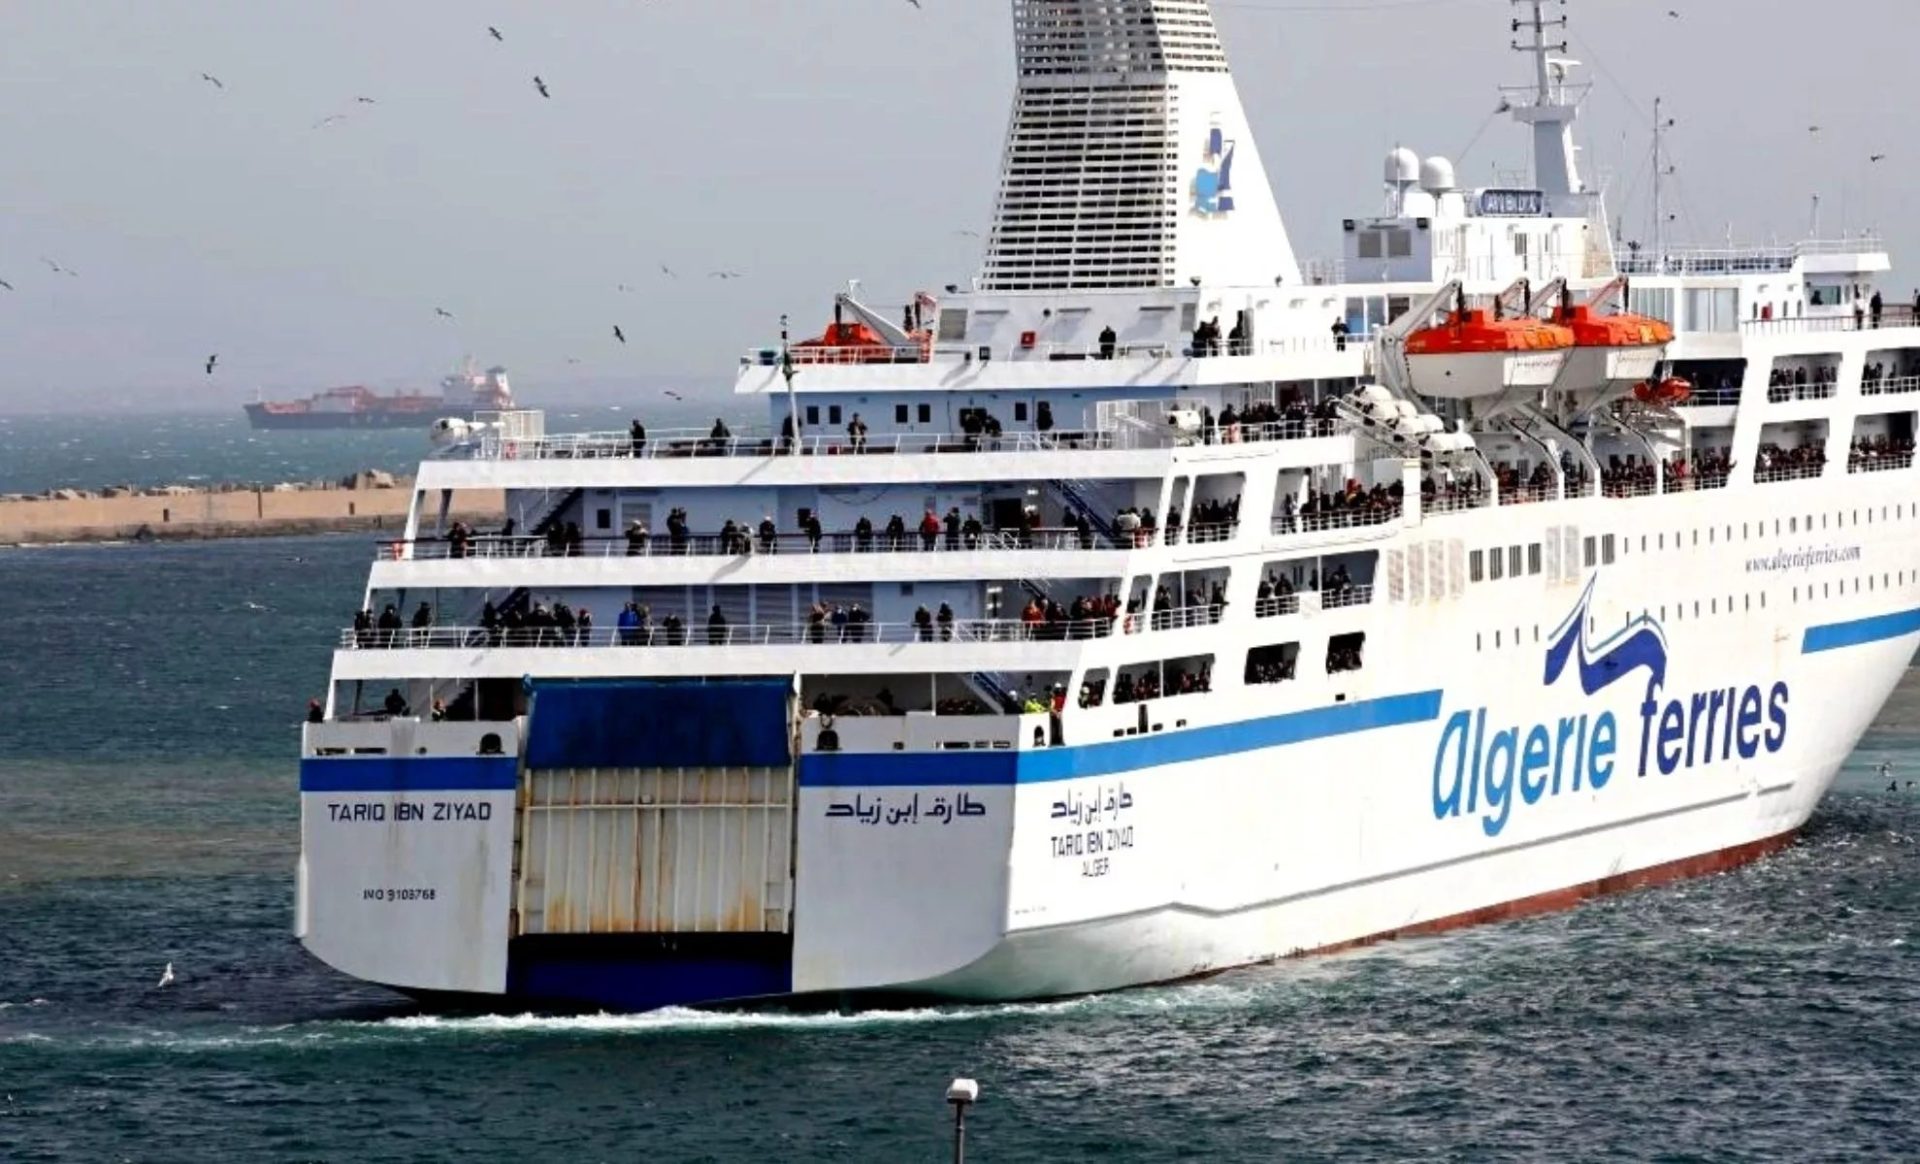 Un navire d'Algérie Ferries laisse des passagers et quitte le port